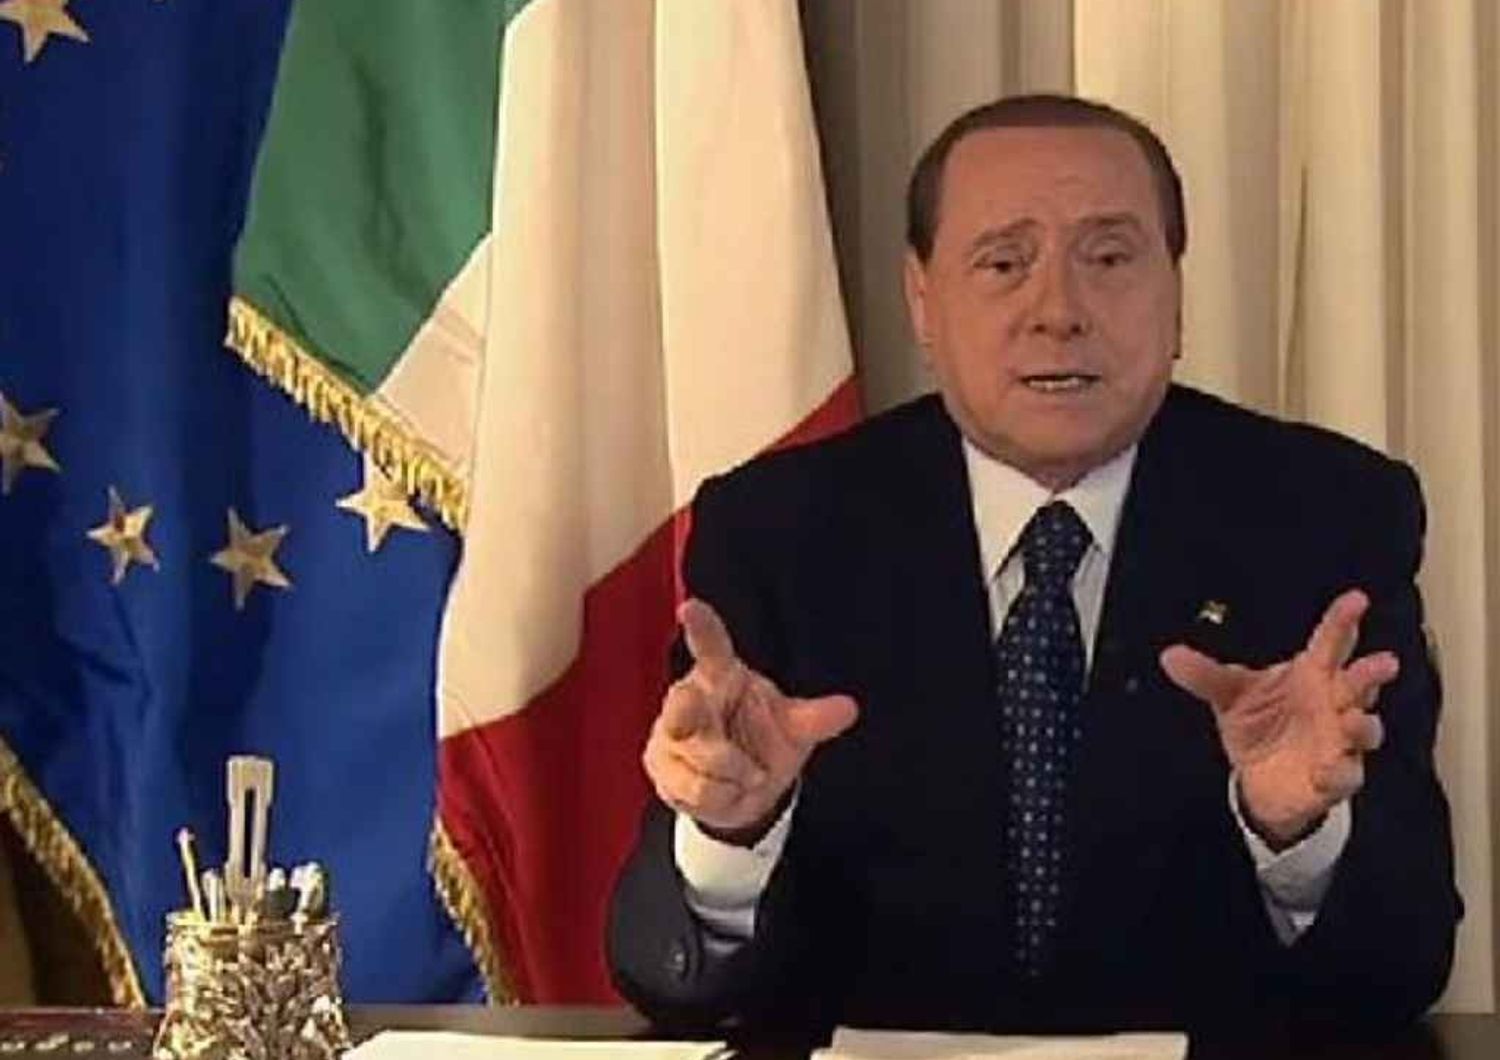 Berlusconi 'apre' sul Quirinale: non importa se candidato e' di sinistra